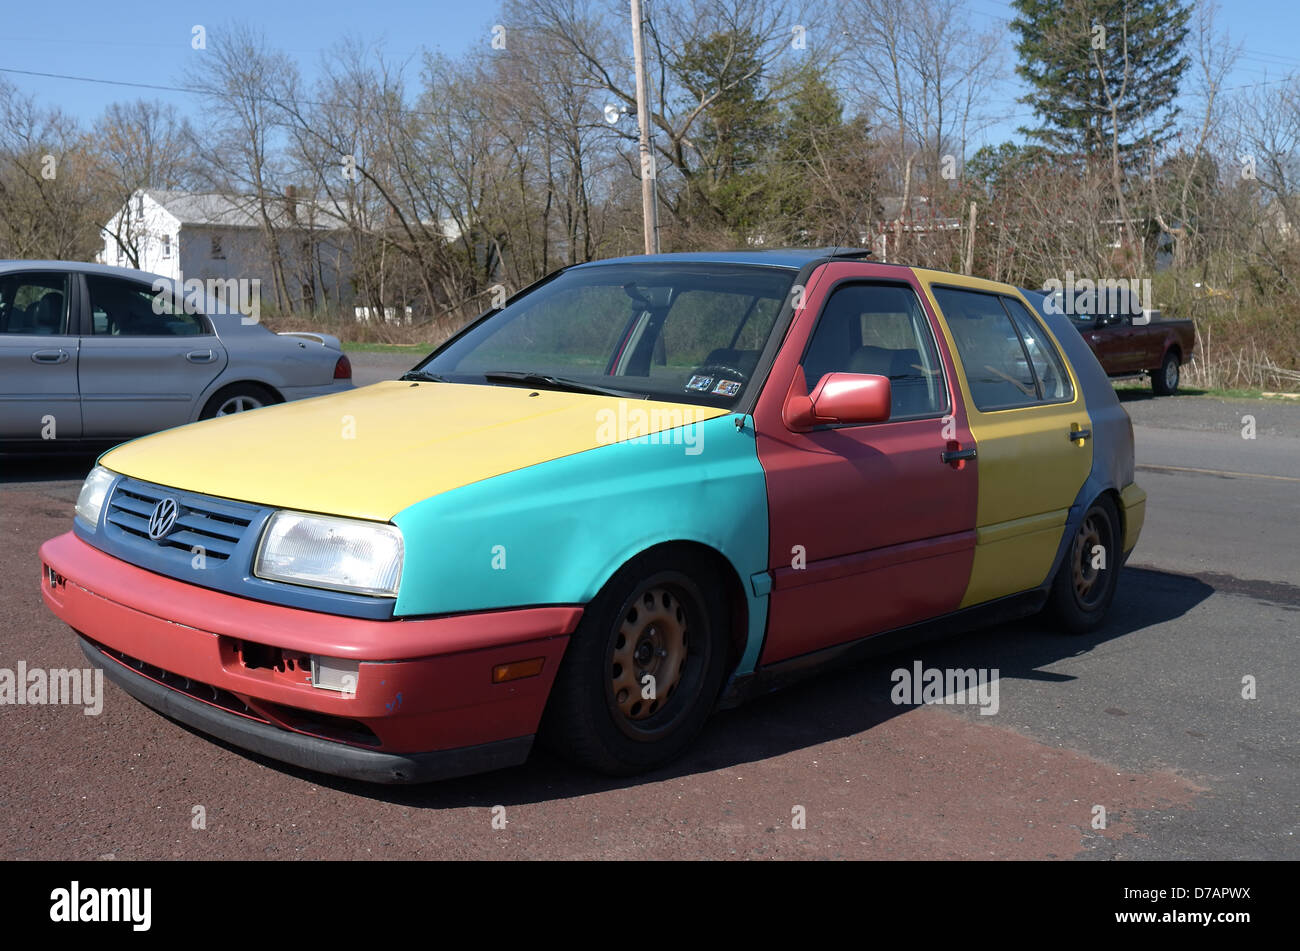 multi-color Volkswagon car Stock Photo